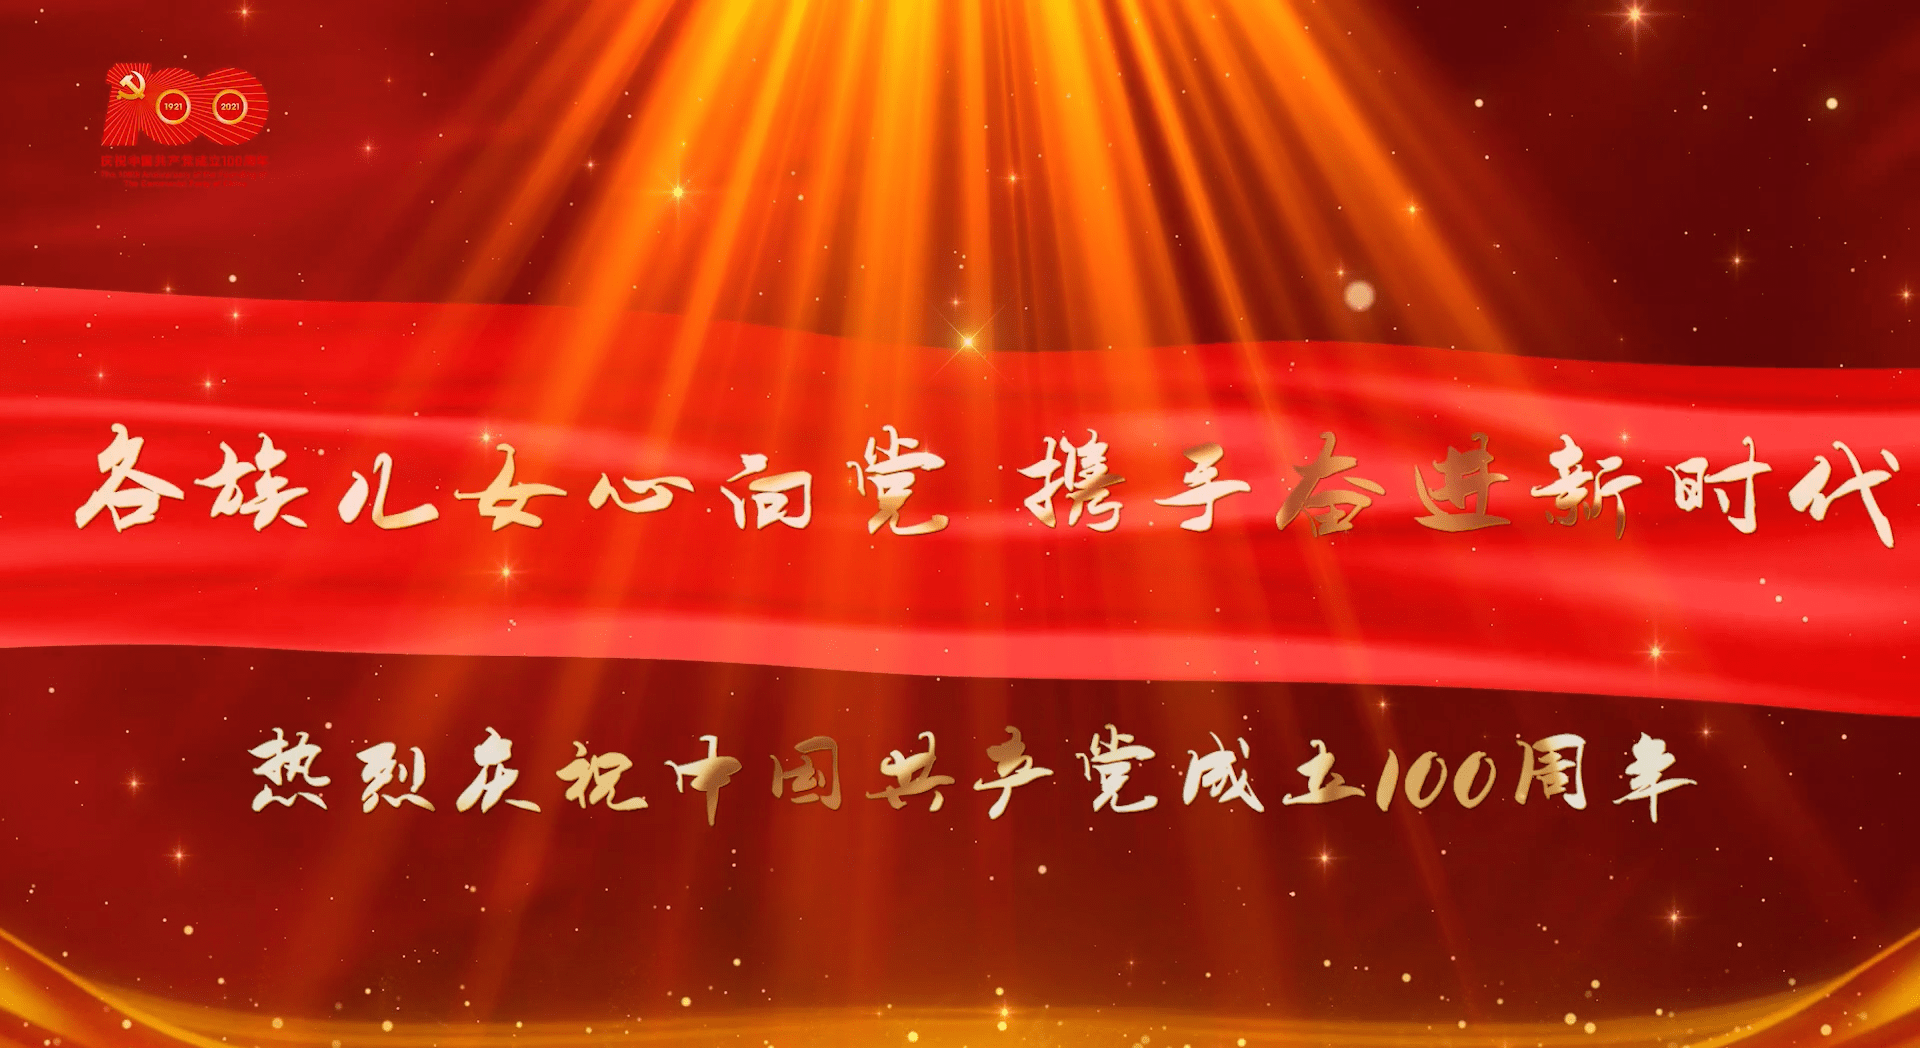 一场以"各族儿女心向党,携手奋进新时代"为主题的庆祝中国共产党成立